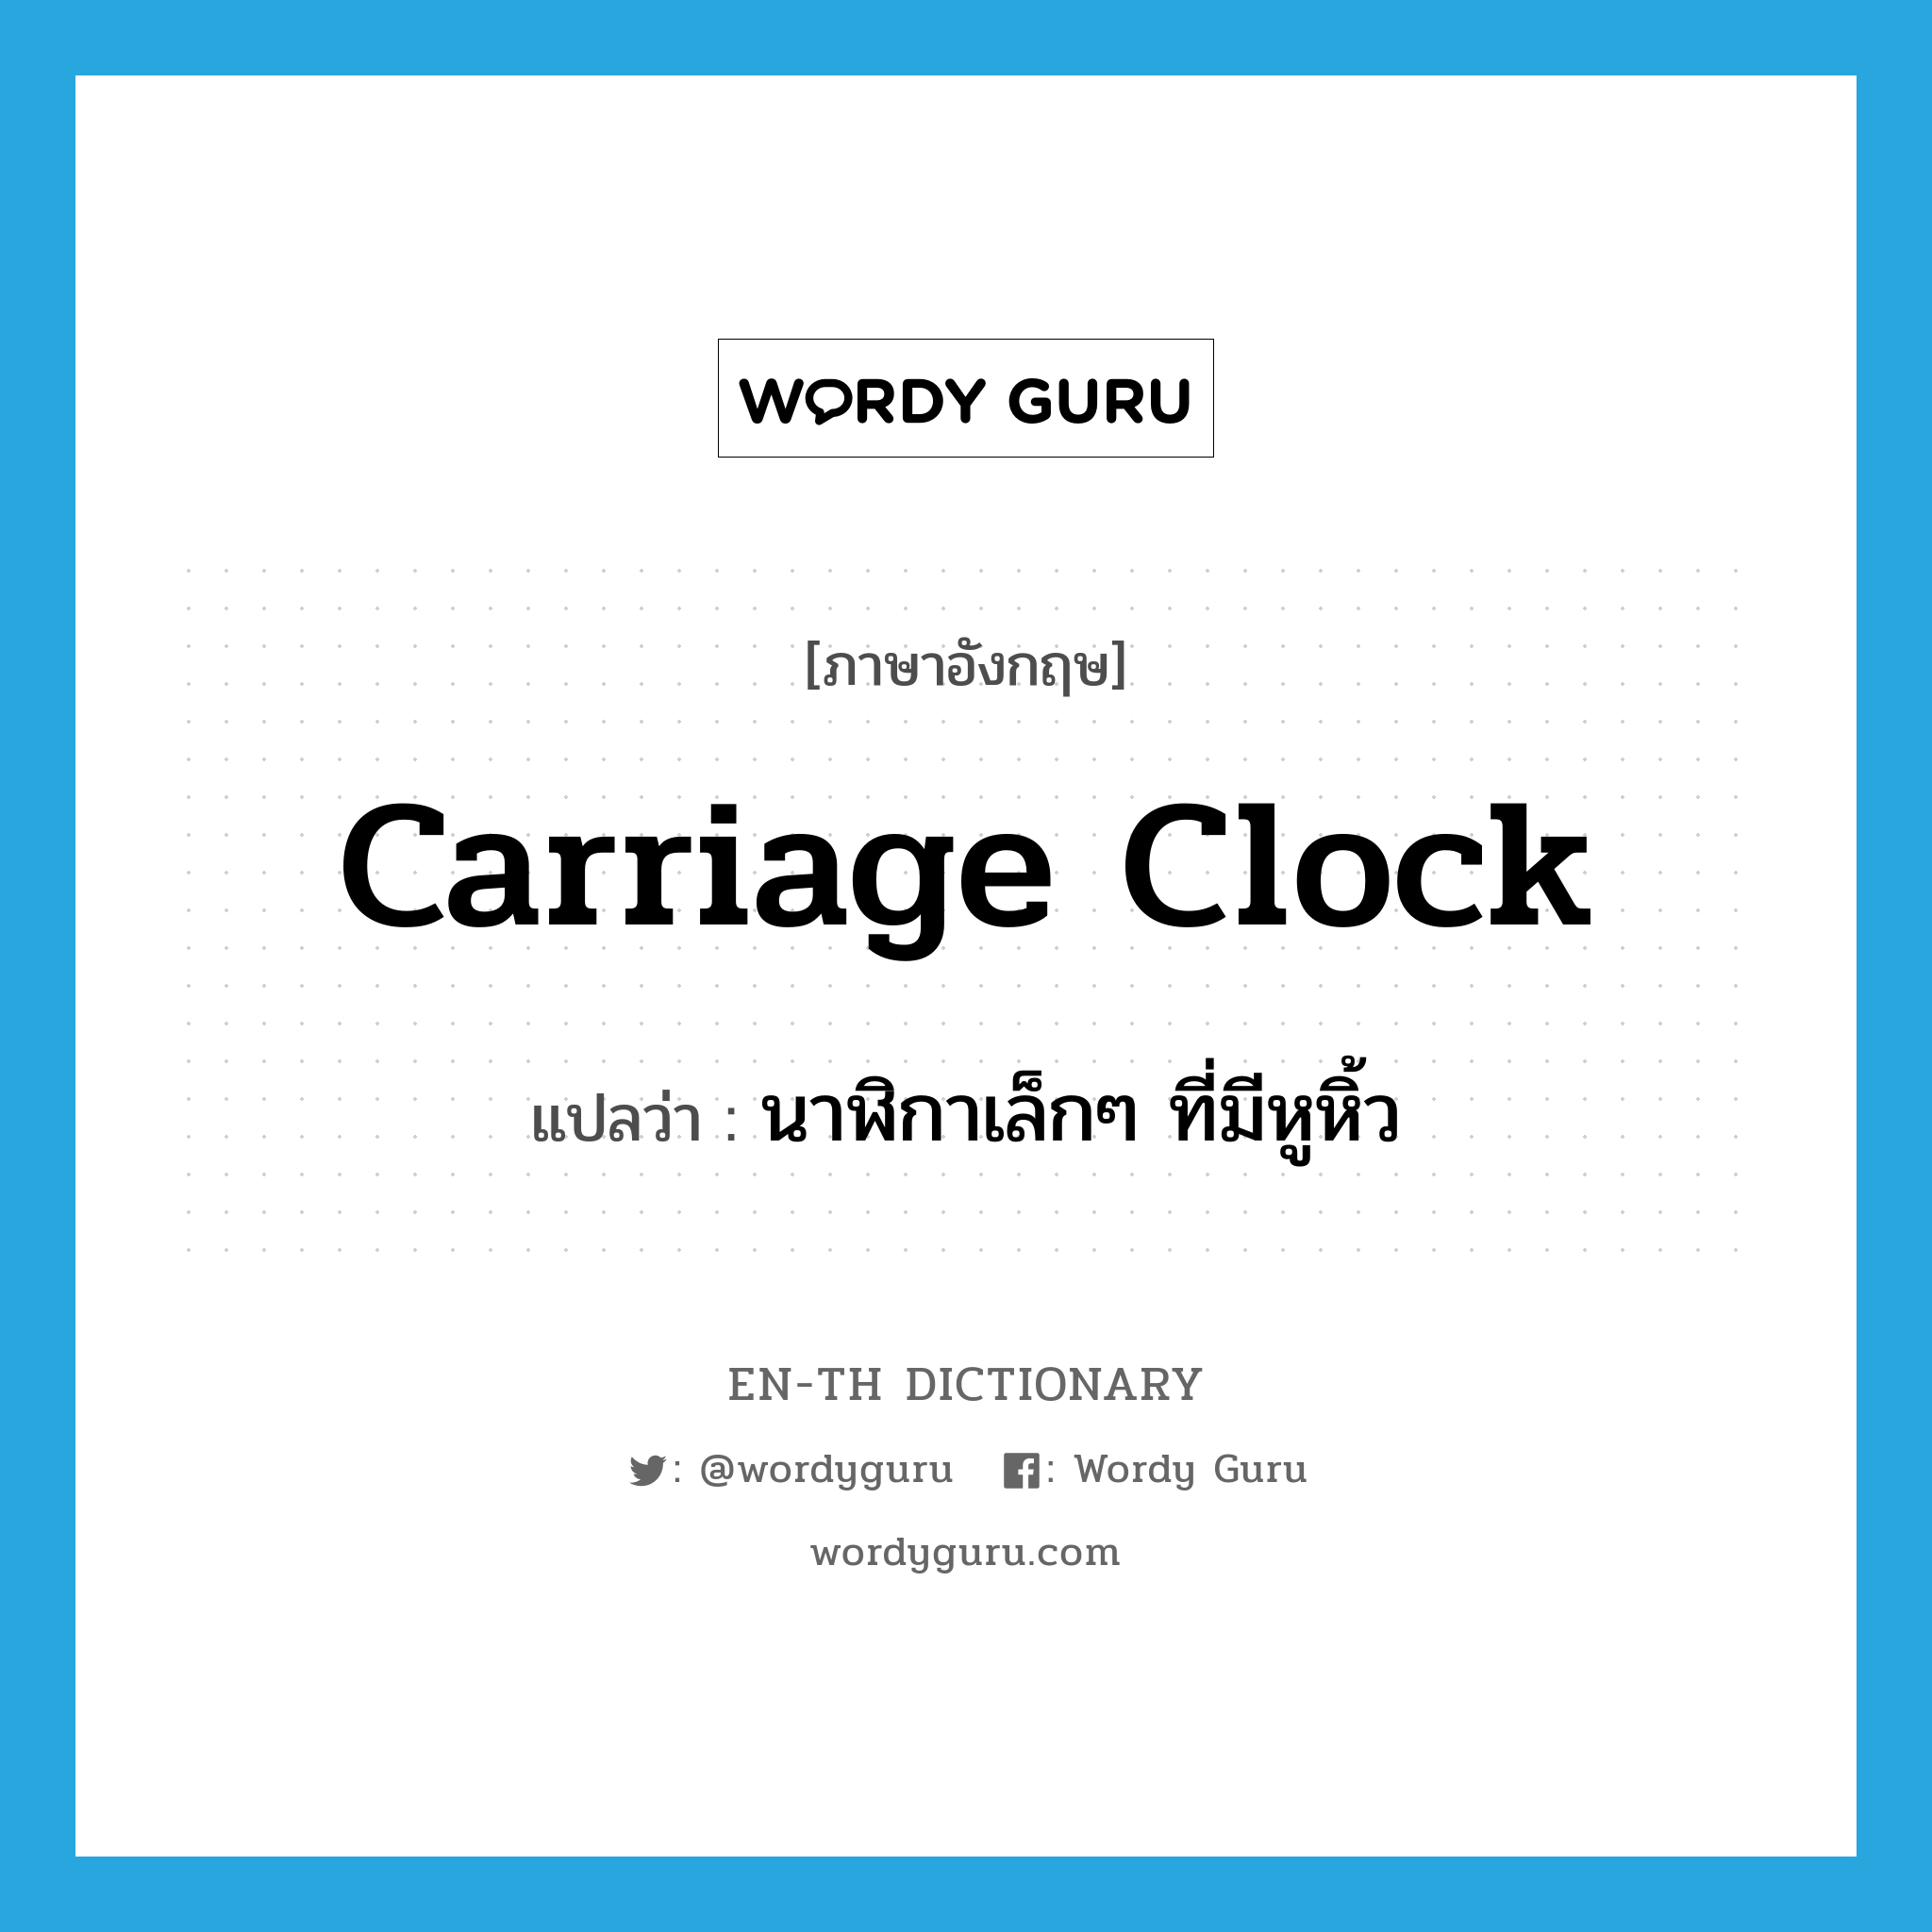 นาฬิกาเล็กๆ ที่มีหูหิ้ว ภาษาอังกฤษ?, คำศัพท์ภาษาอังกฤษ นาฬิกาเล็กๆ ที่มีหูหิ้ว แปลว่า carriage clock ประเภท N หมวด N